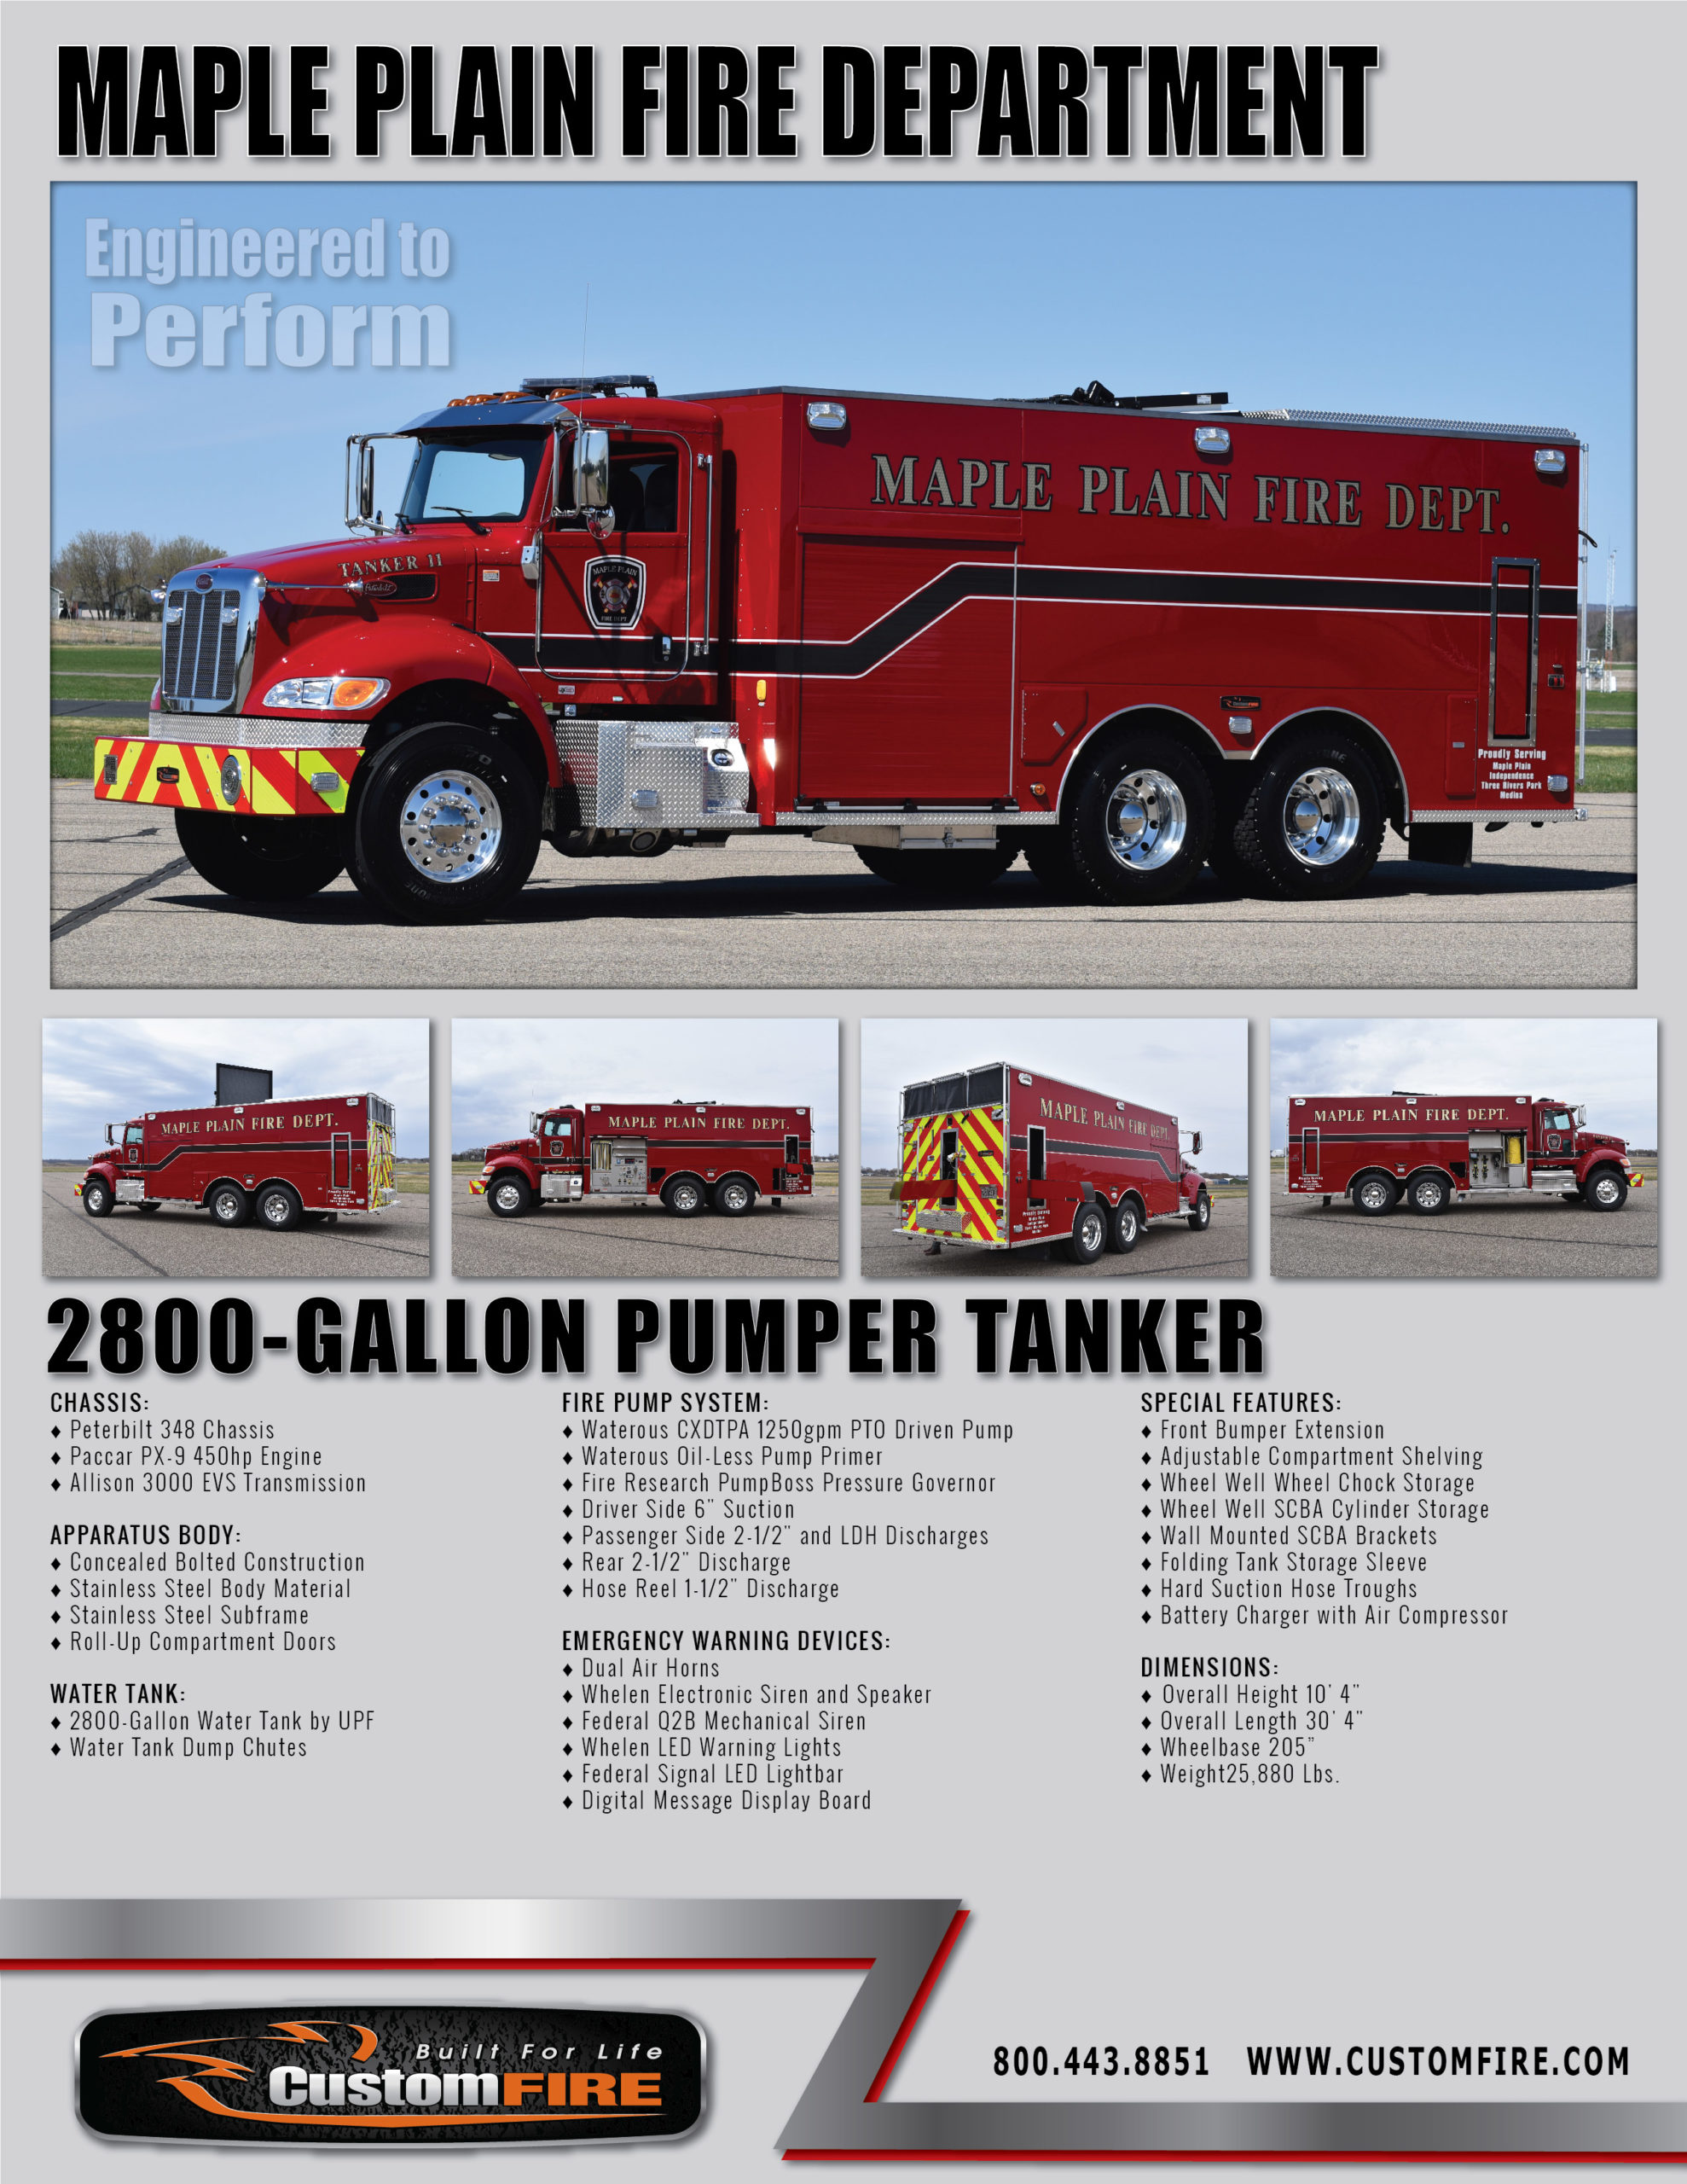 2800-Gallon Pumper Tender